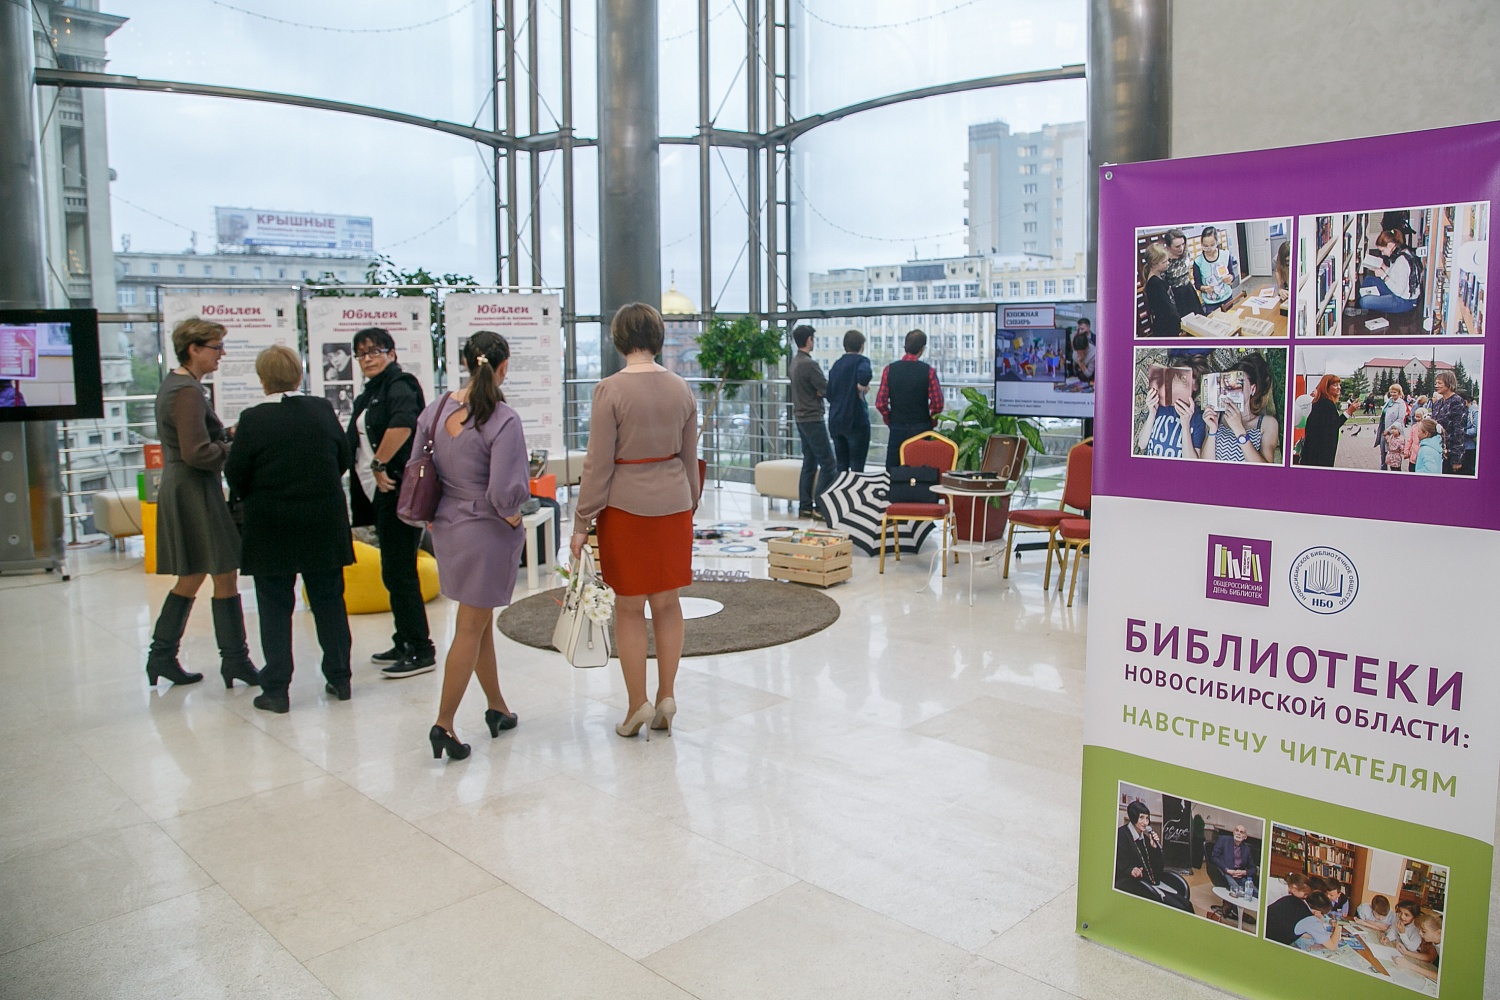 25 мая 2018 года в Большом зале правительства Новосибирской области состоялось официальное празднование Общероссийского Дня библиотек